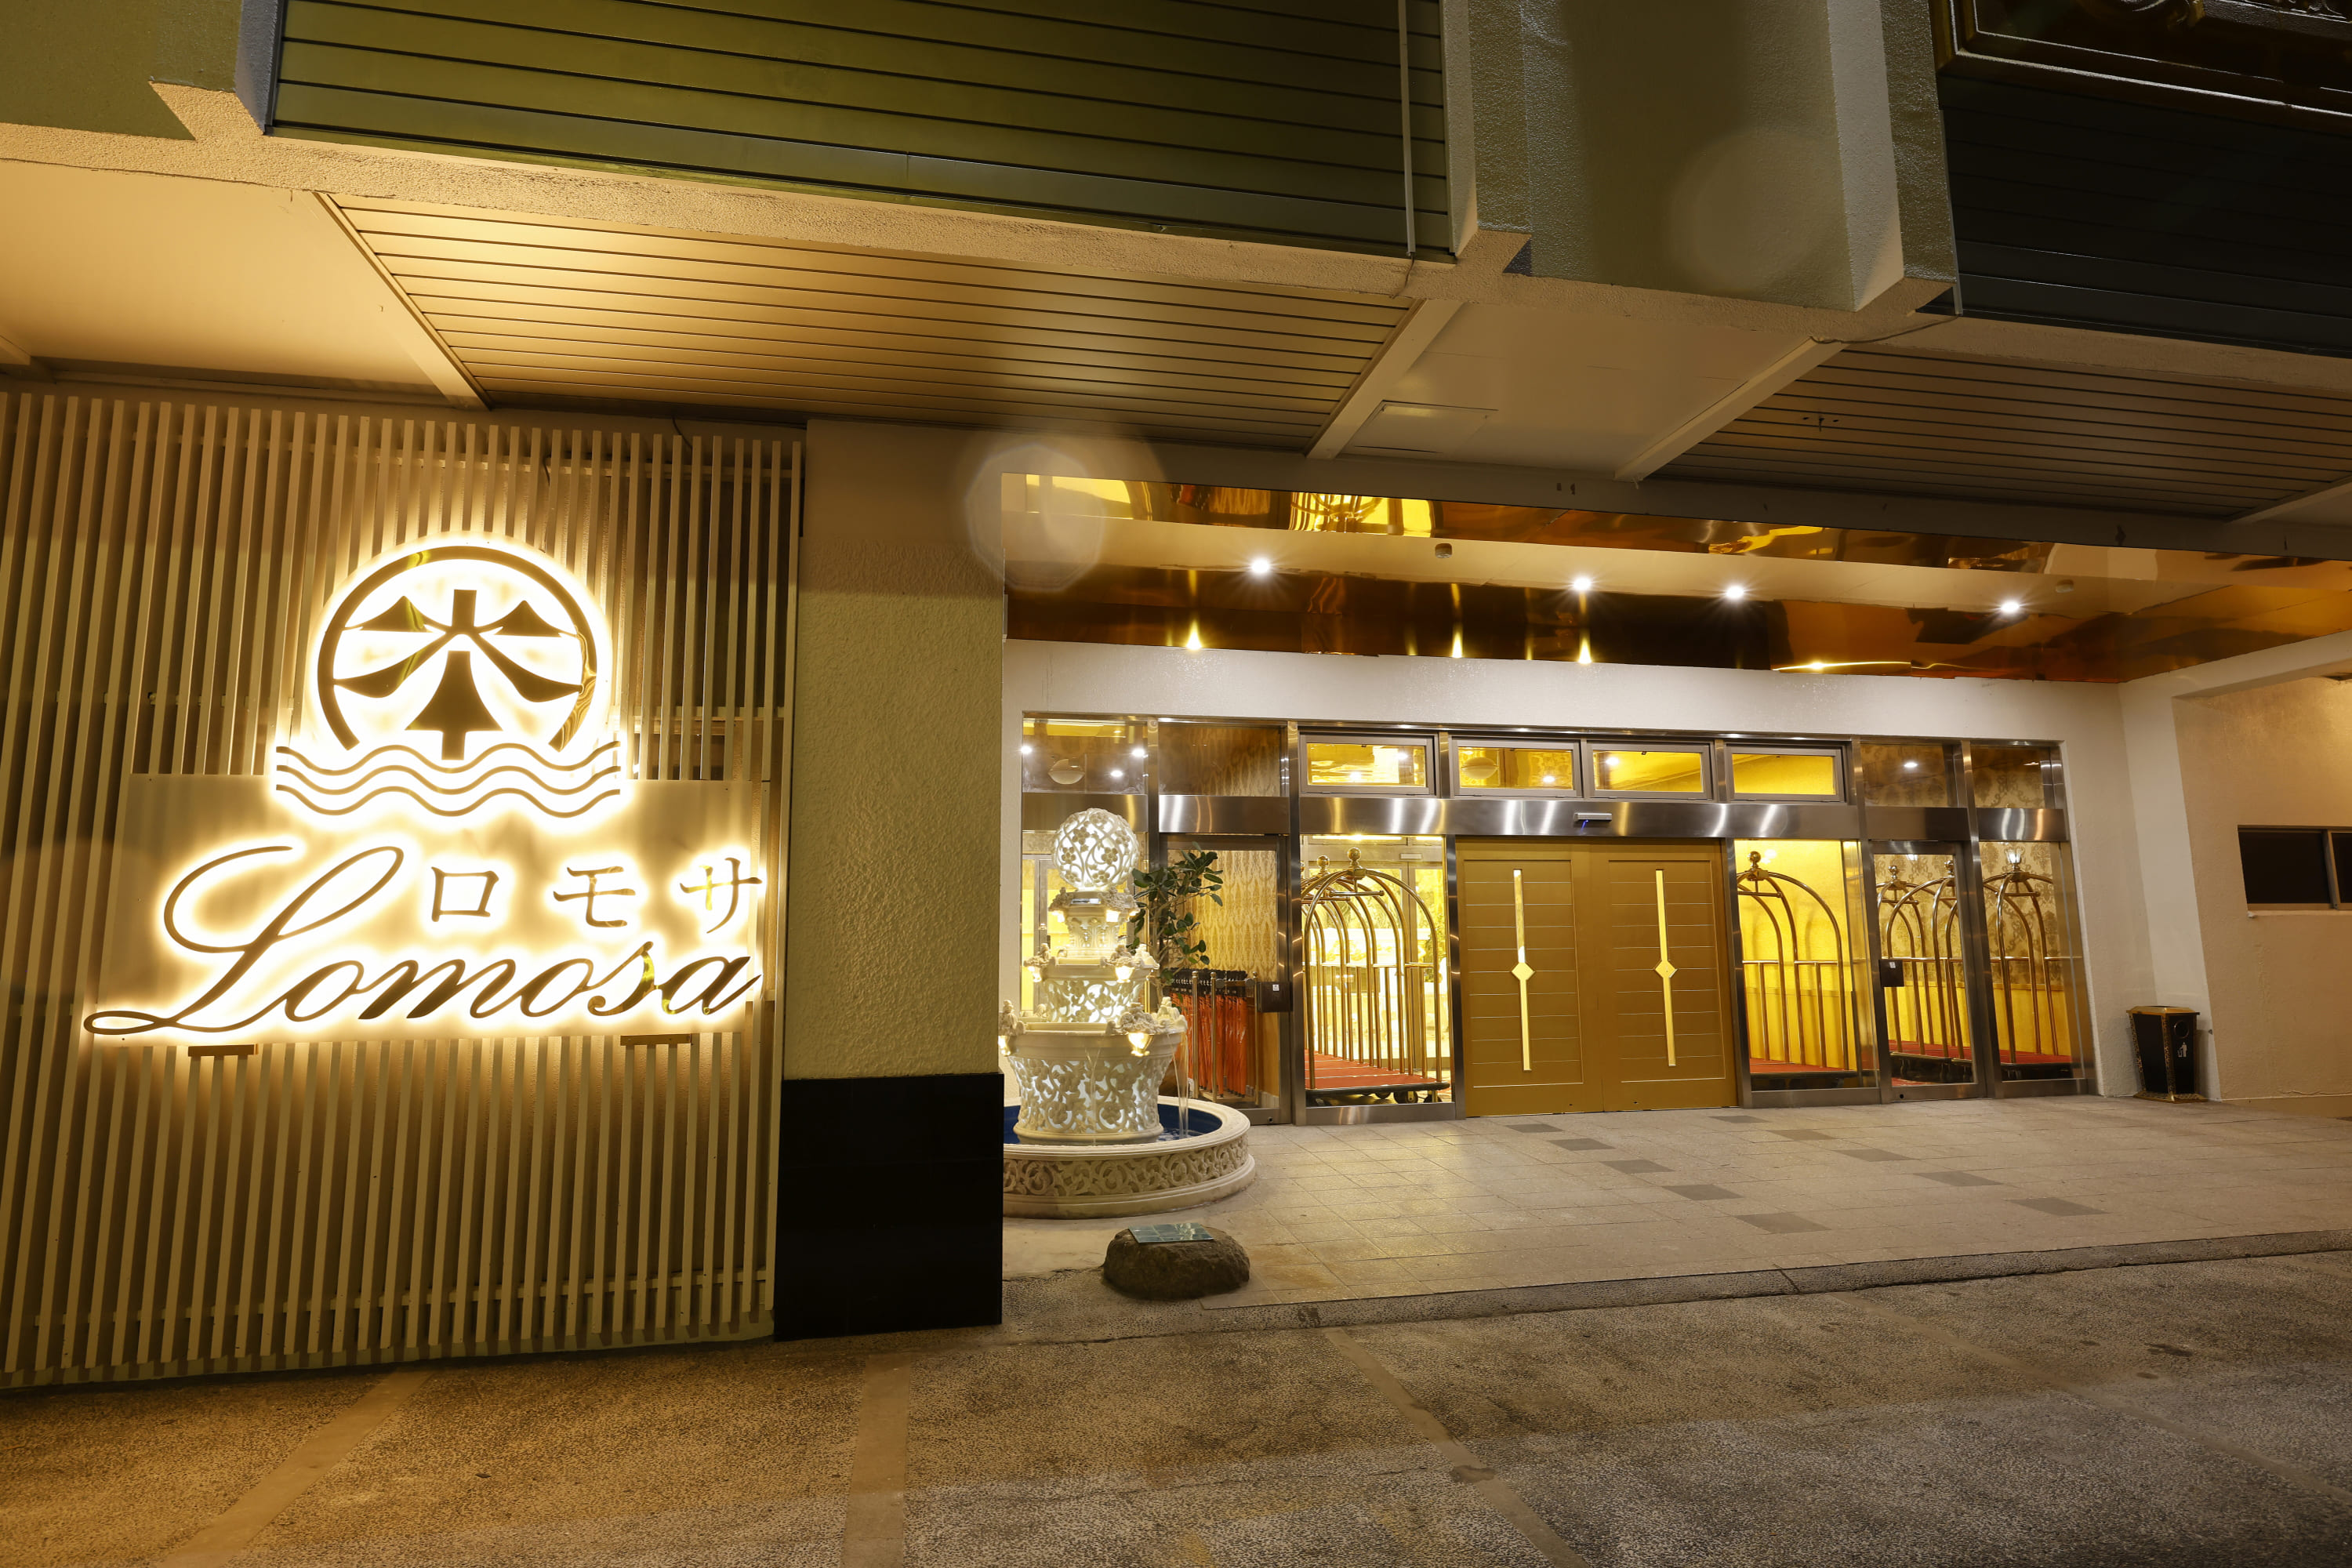 Hotel Lomosa Minakami Riverside Resort & Spa